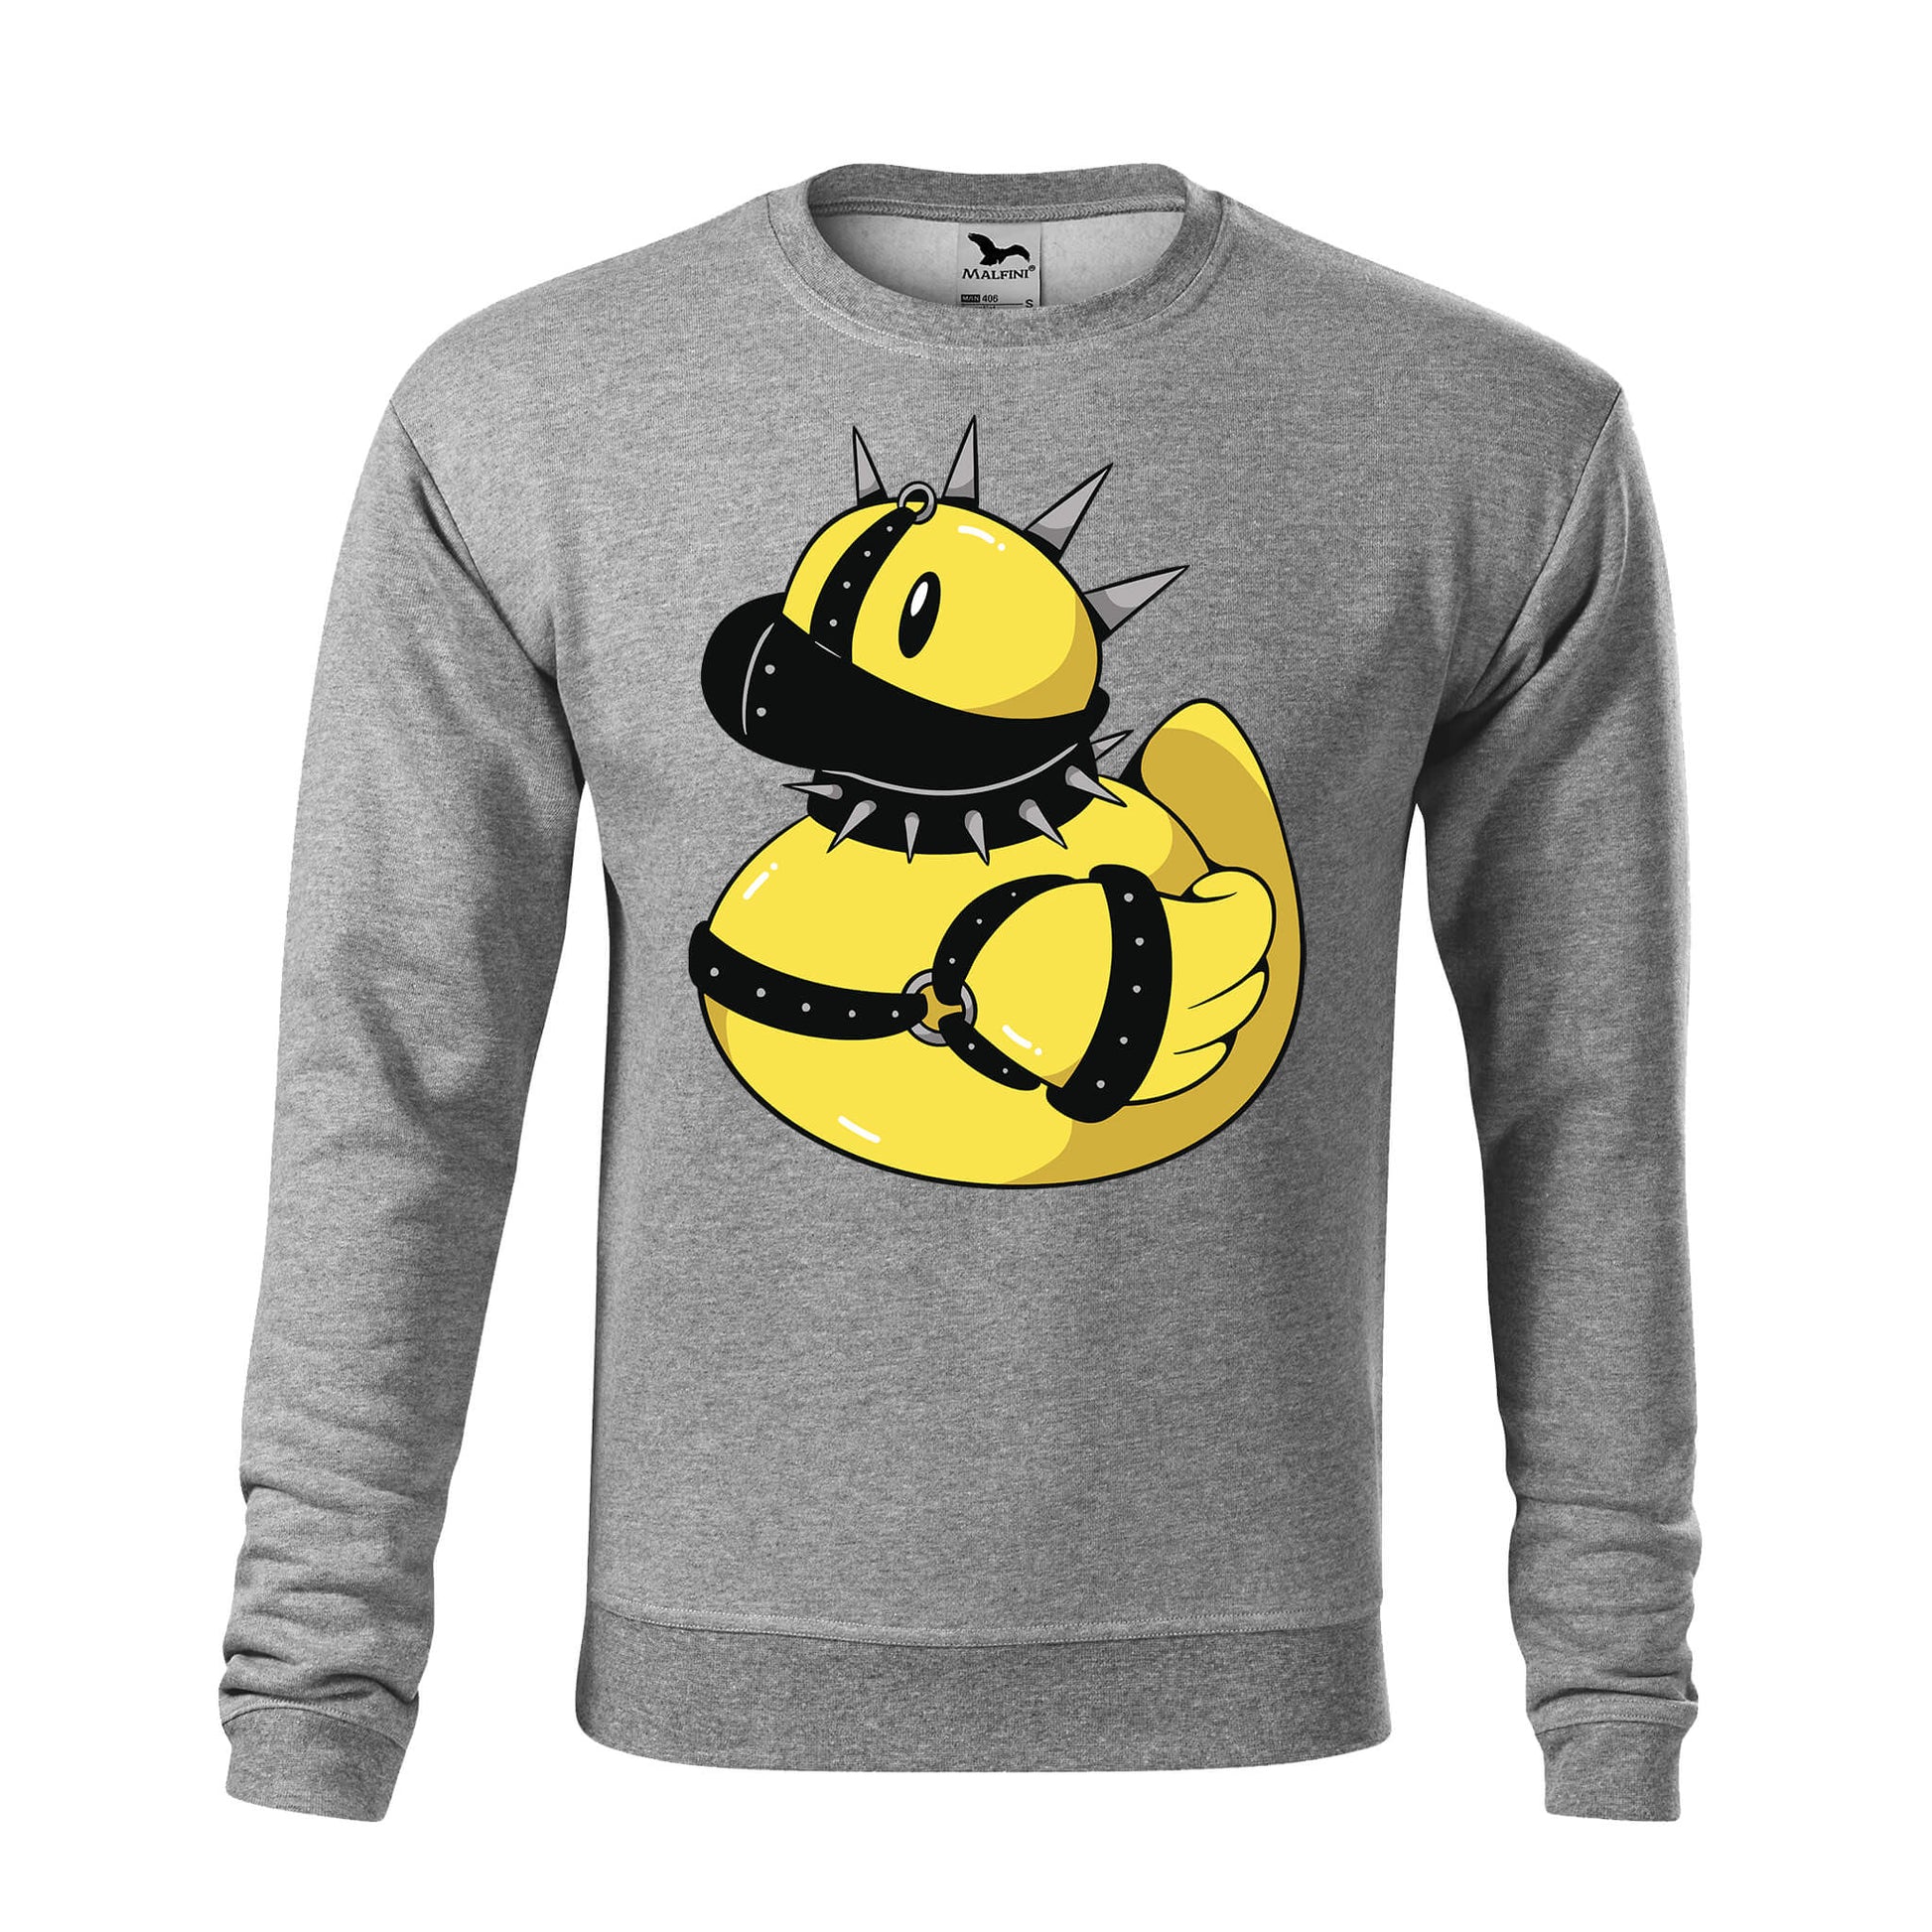 Punk rubber duck sweatshirt - rvdesignprint